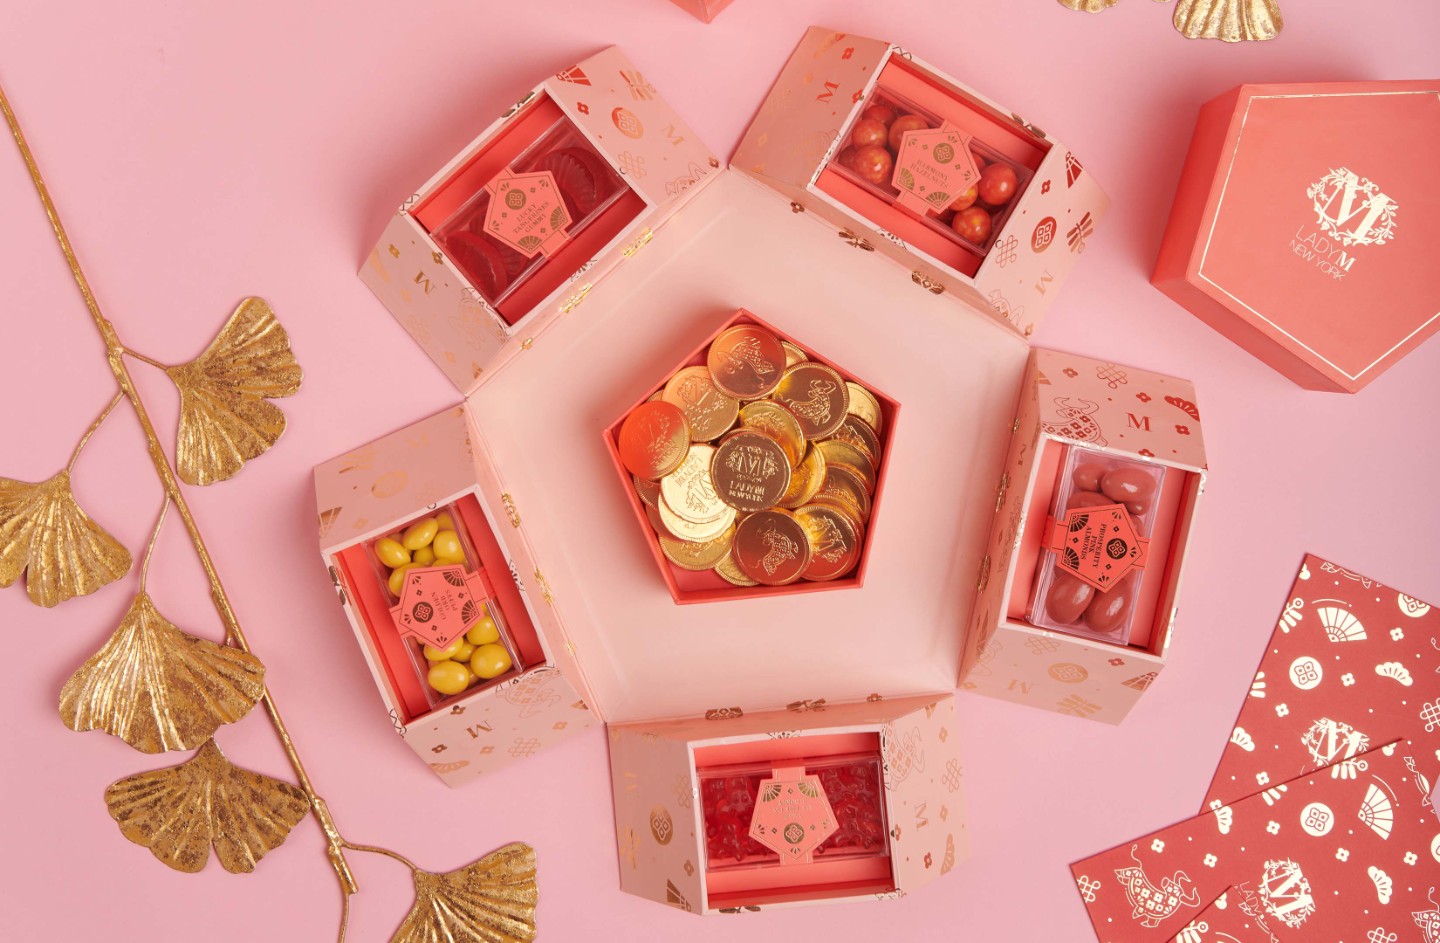 ladym 现有 2021新春糖果礼盒正式发售,现价$72.